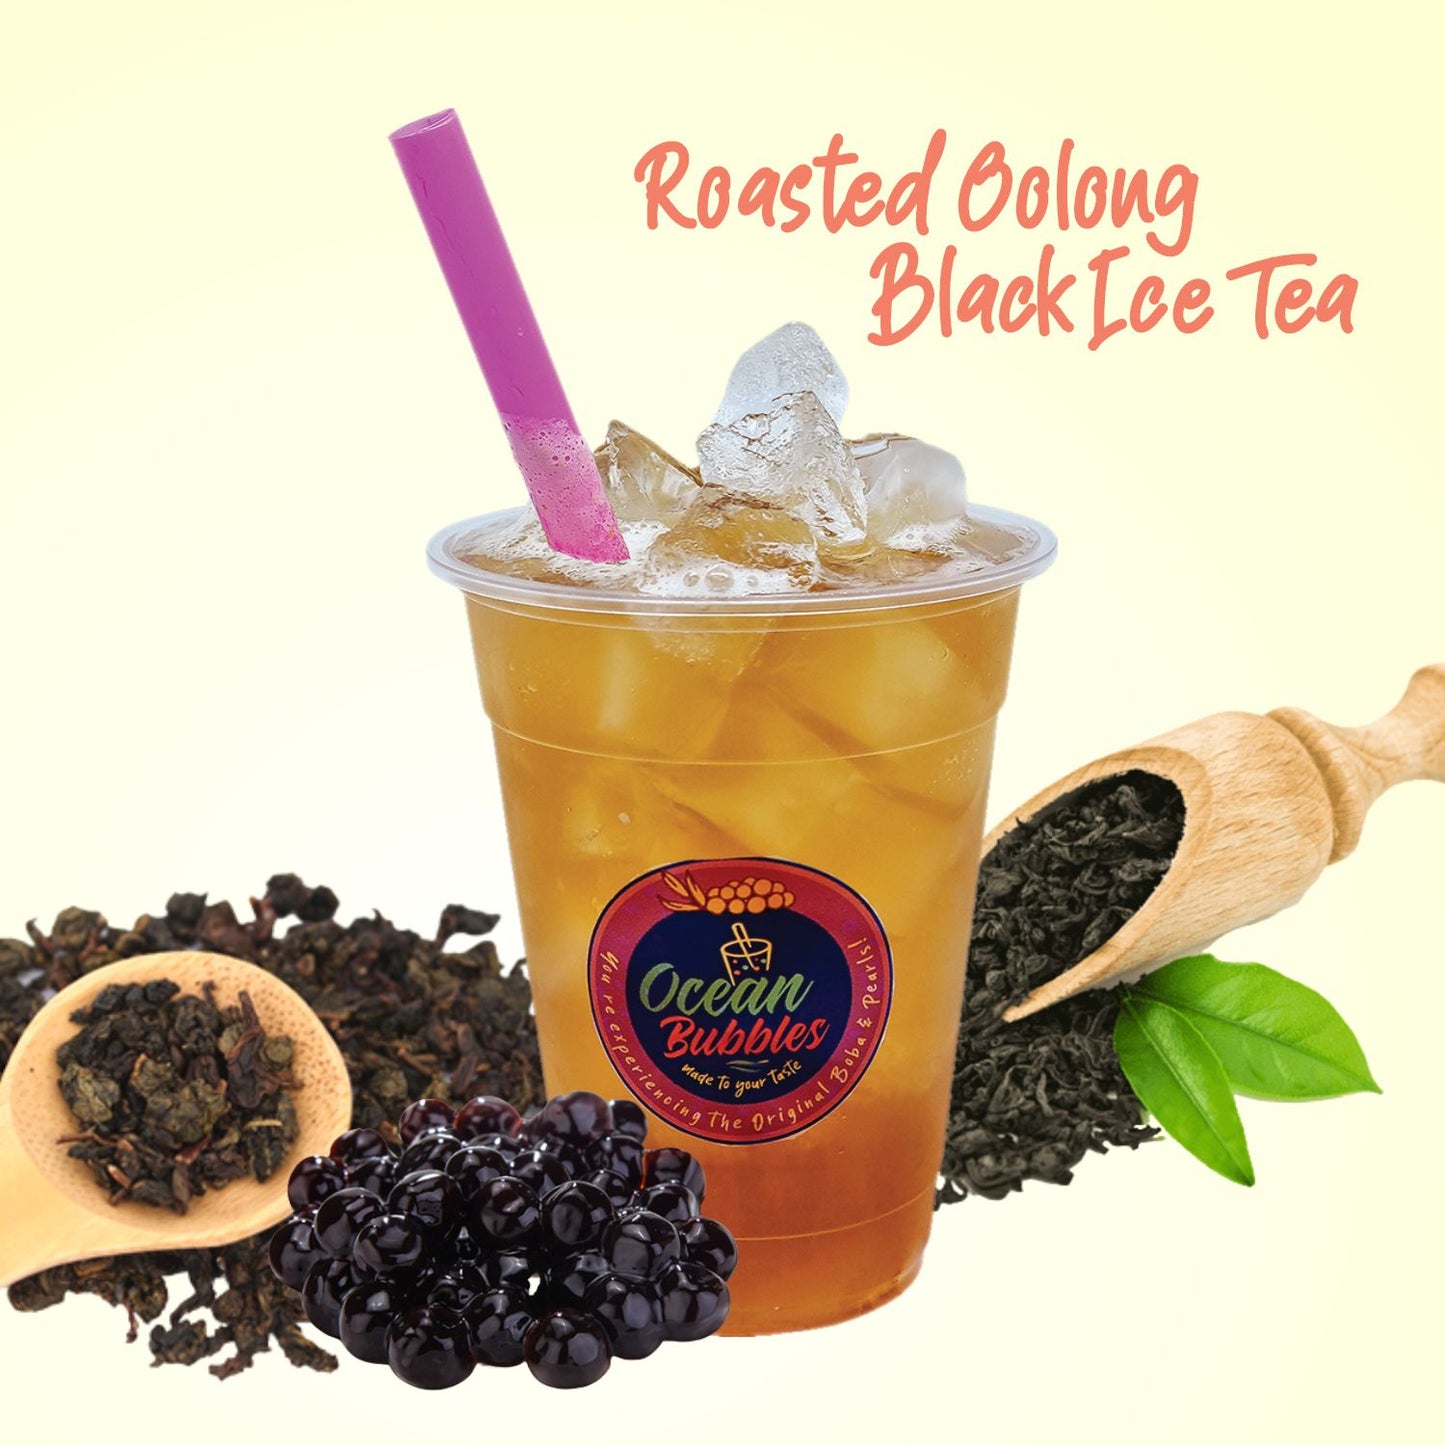 Roasted Oolong Black Ice Tea